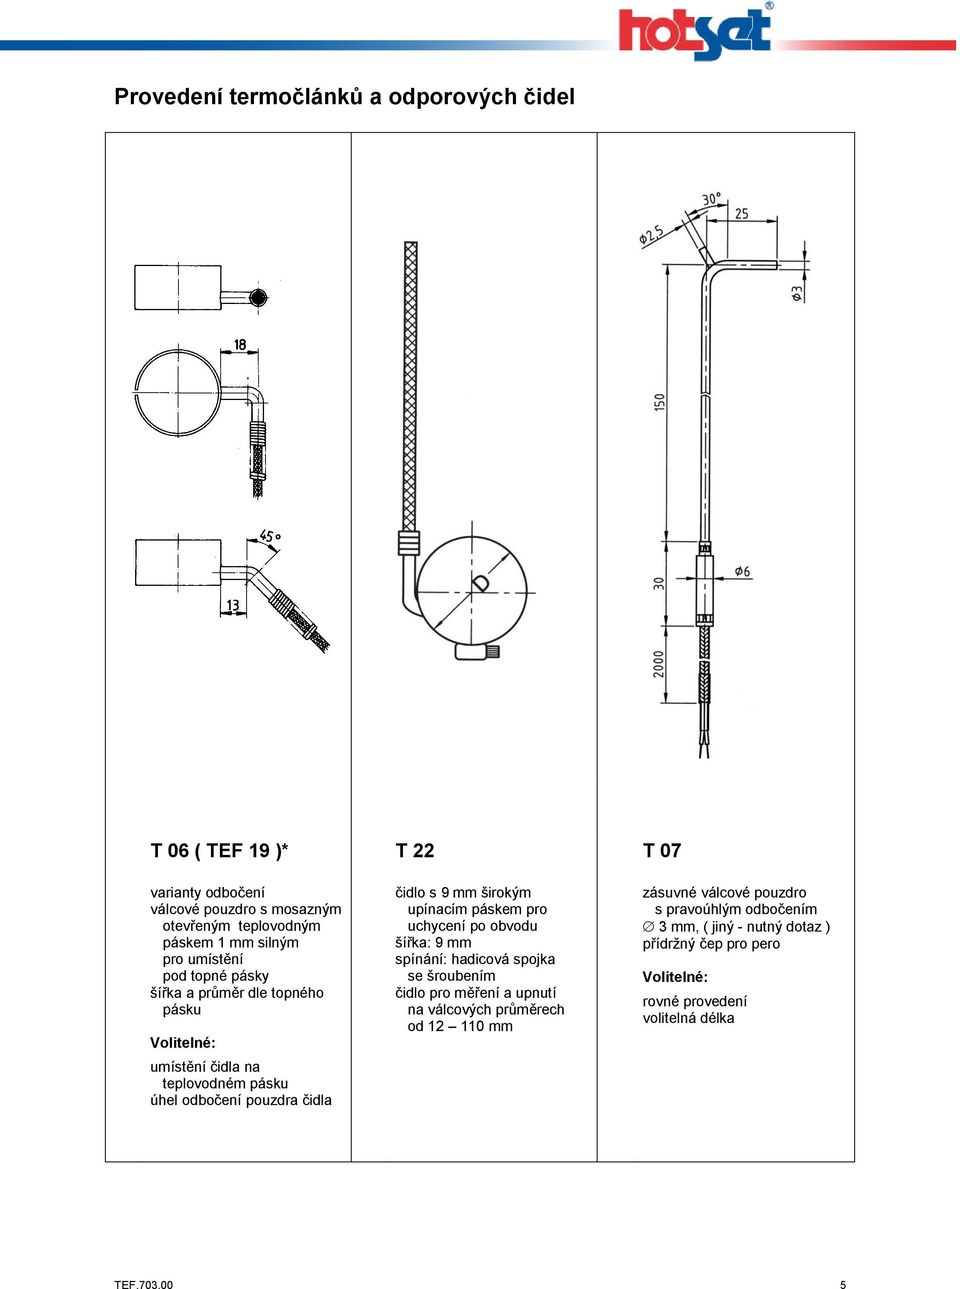 uchycení po obvodu šířka: 9 mm spínání: hadicová spojka se šroubením čidlo pro měření a upnutí na válcových průměrech od 12 110 mm T 07